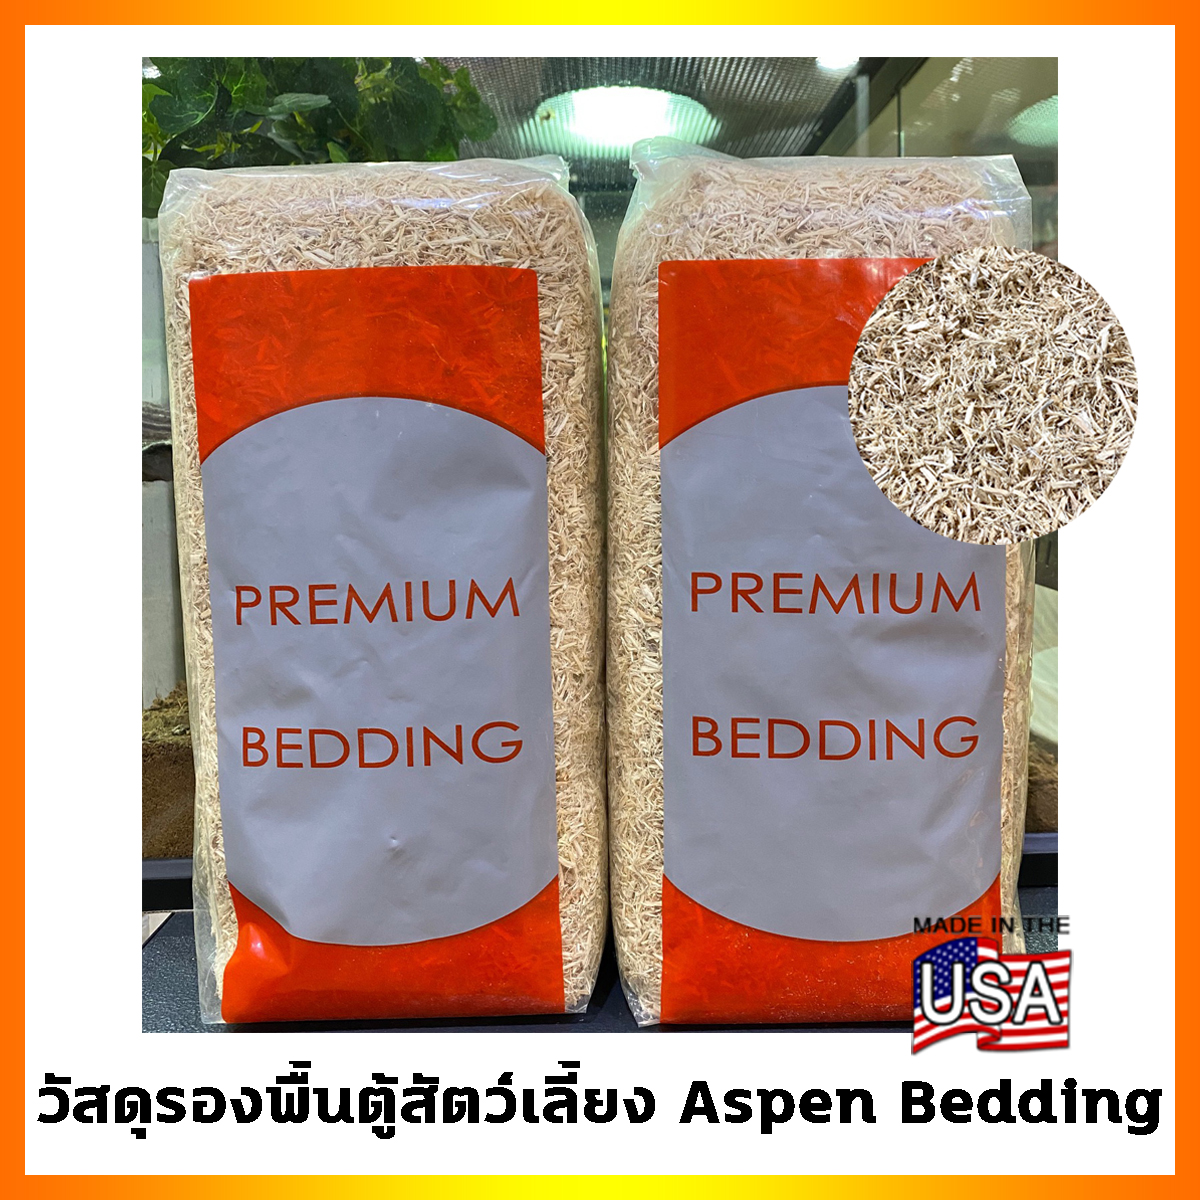 Aspen Bedding วัสดุรองพื้นตู้สัตว์เลี้ยง แอสเพ็น ผลิตจากต้นแอสเพ็น 100% ผ่านความร้อนเพื่อลดความชื้นและเชื้อแบคทีเรีย ปลอดภัย ไม่มีฝุ่น